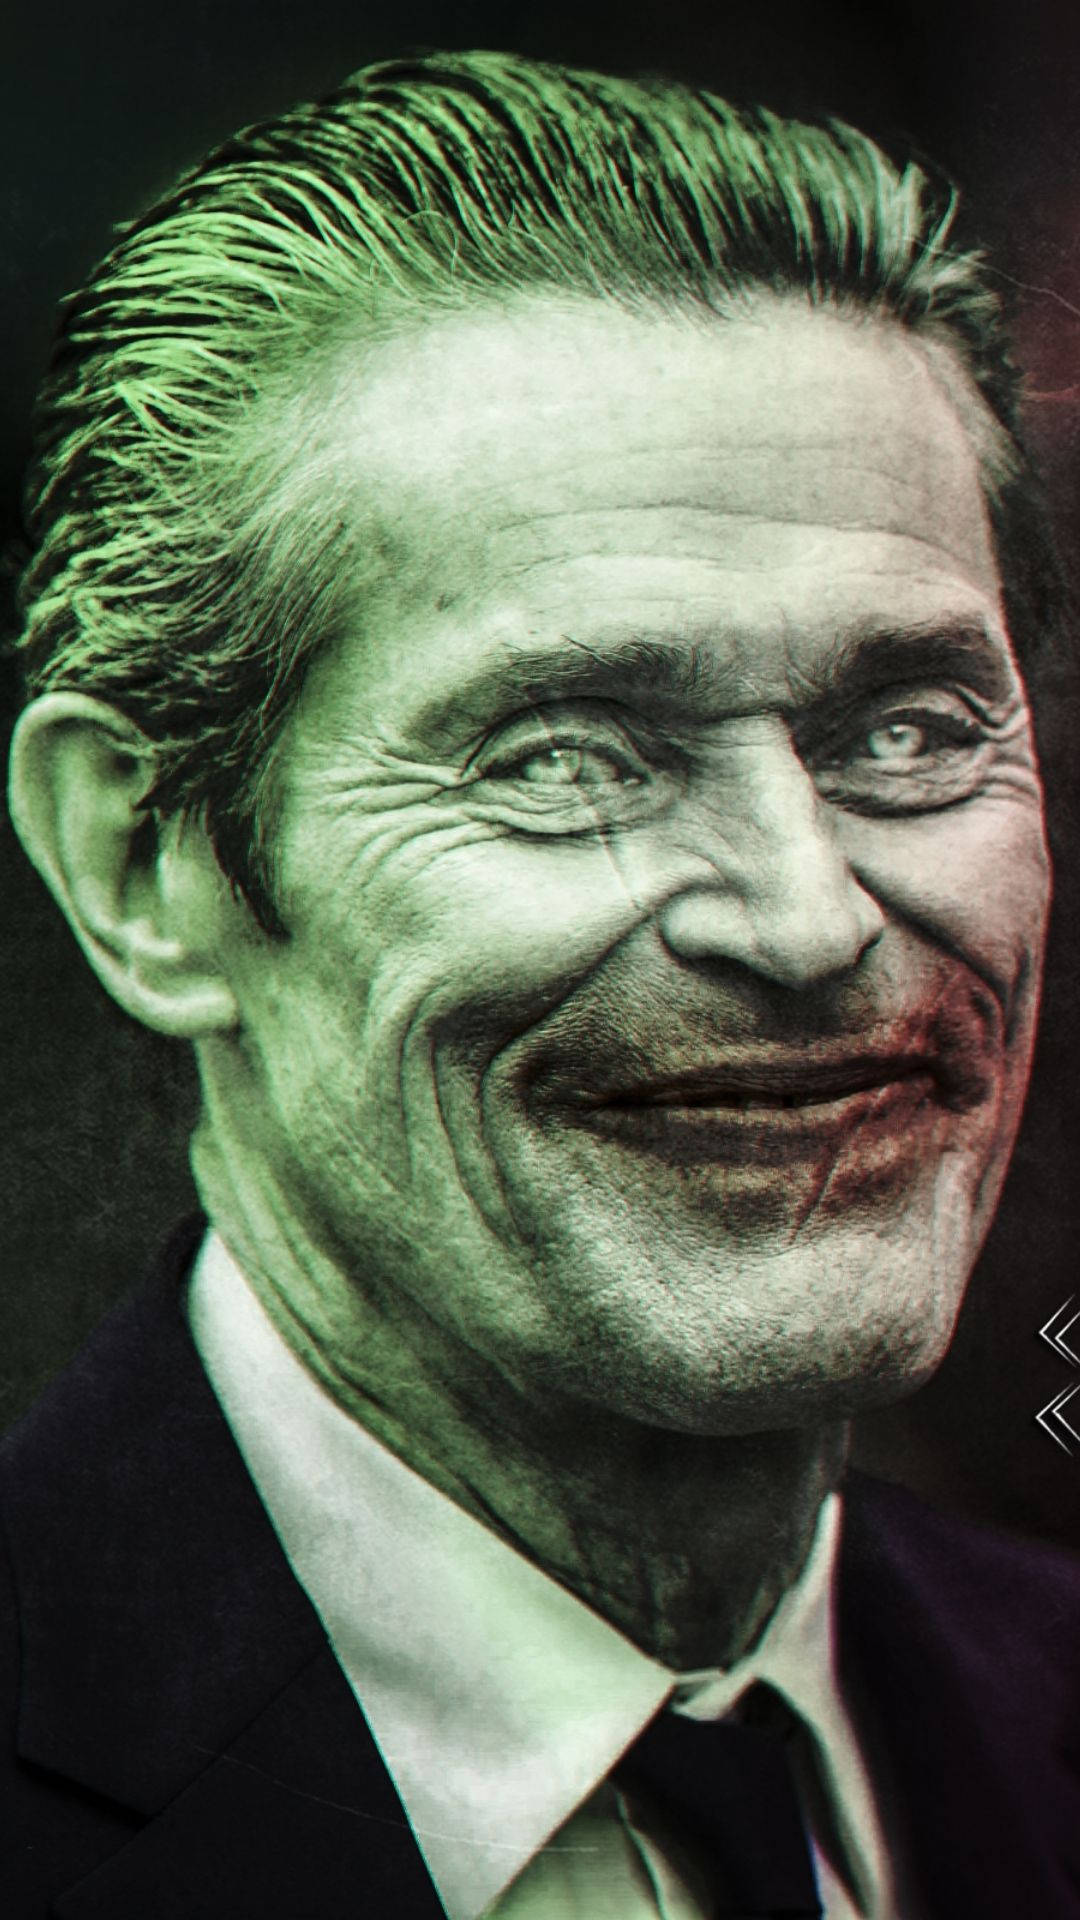 Willem Dafoe Joker Face Wallpaper